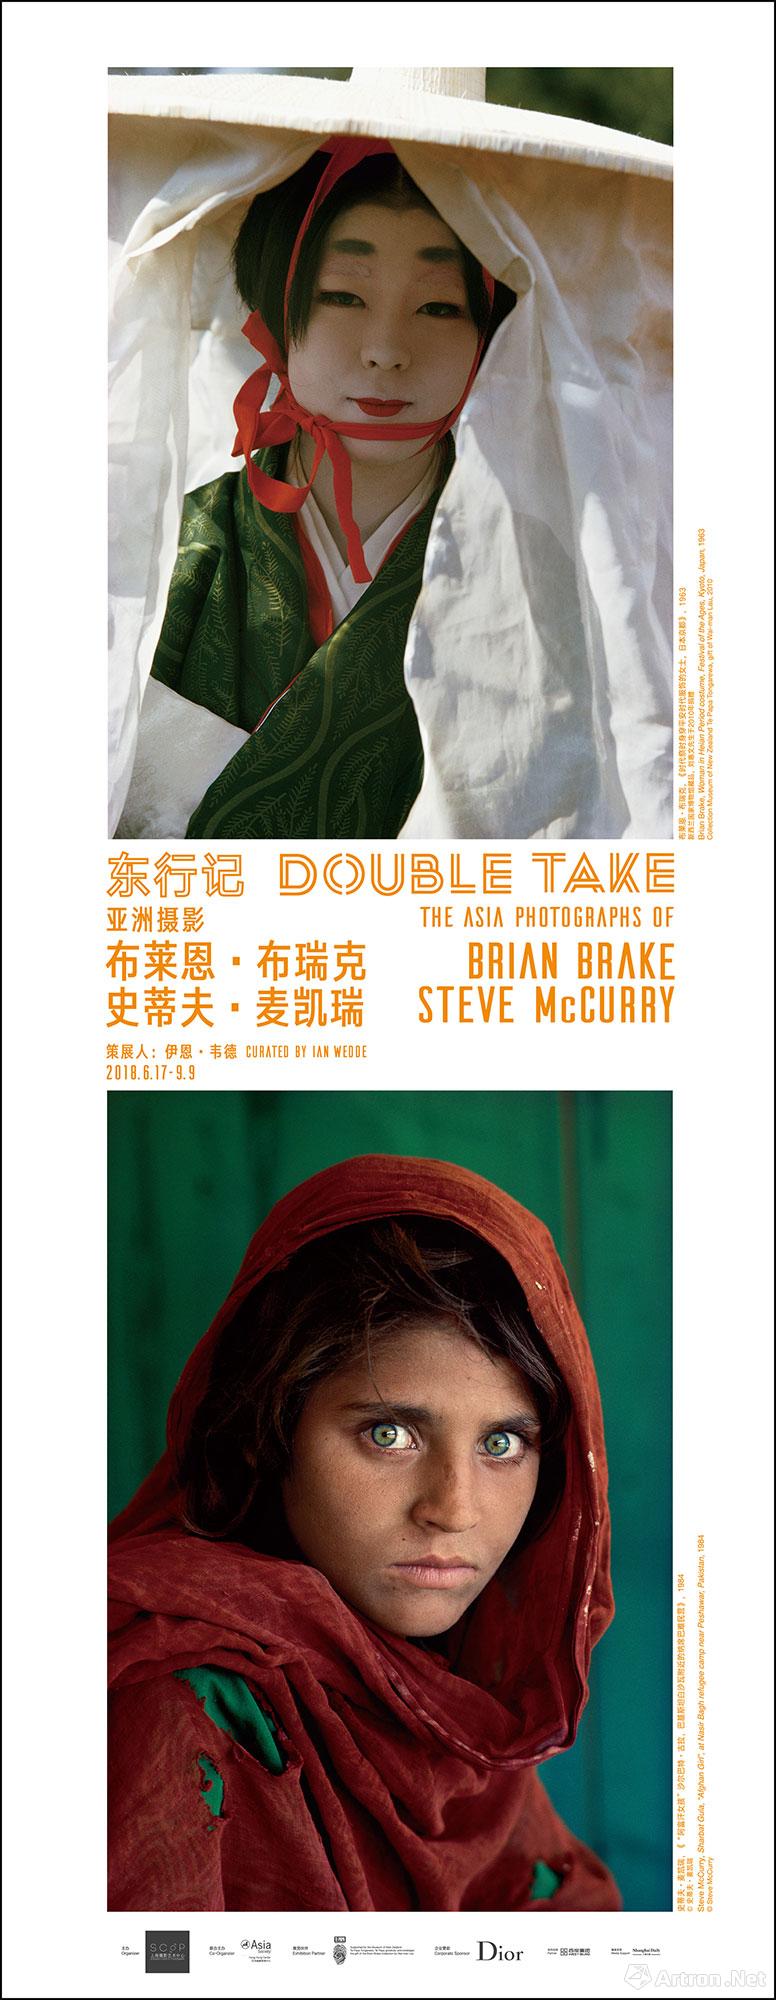 “东行记”布莱恩·布瑞克和史蒂夫·麦凯瑞的亚洲摄影展